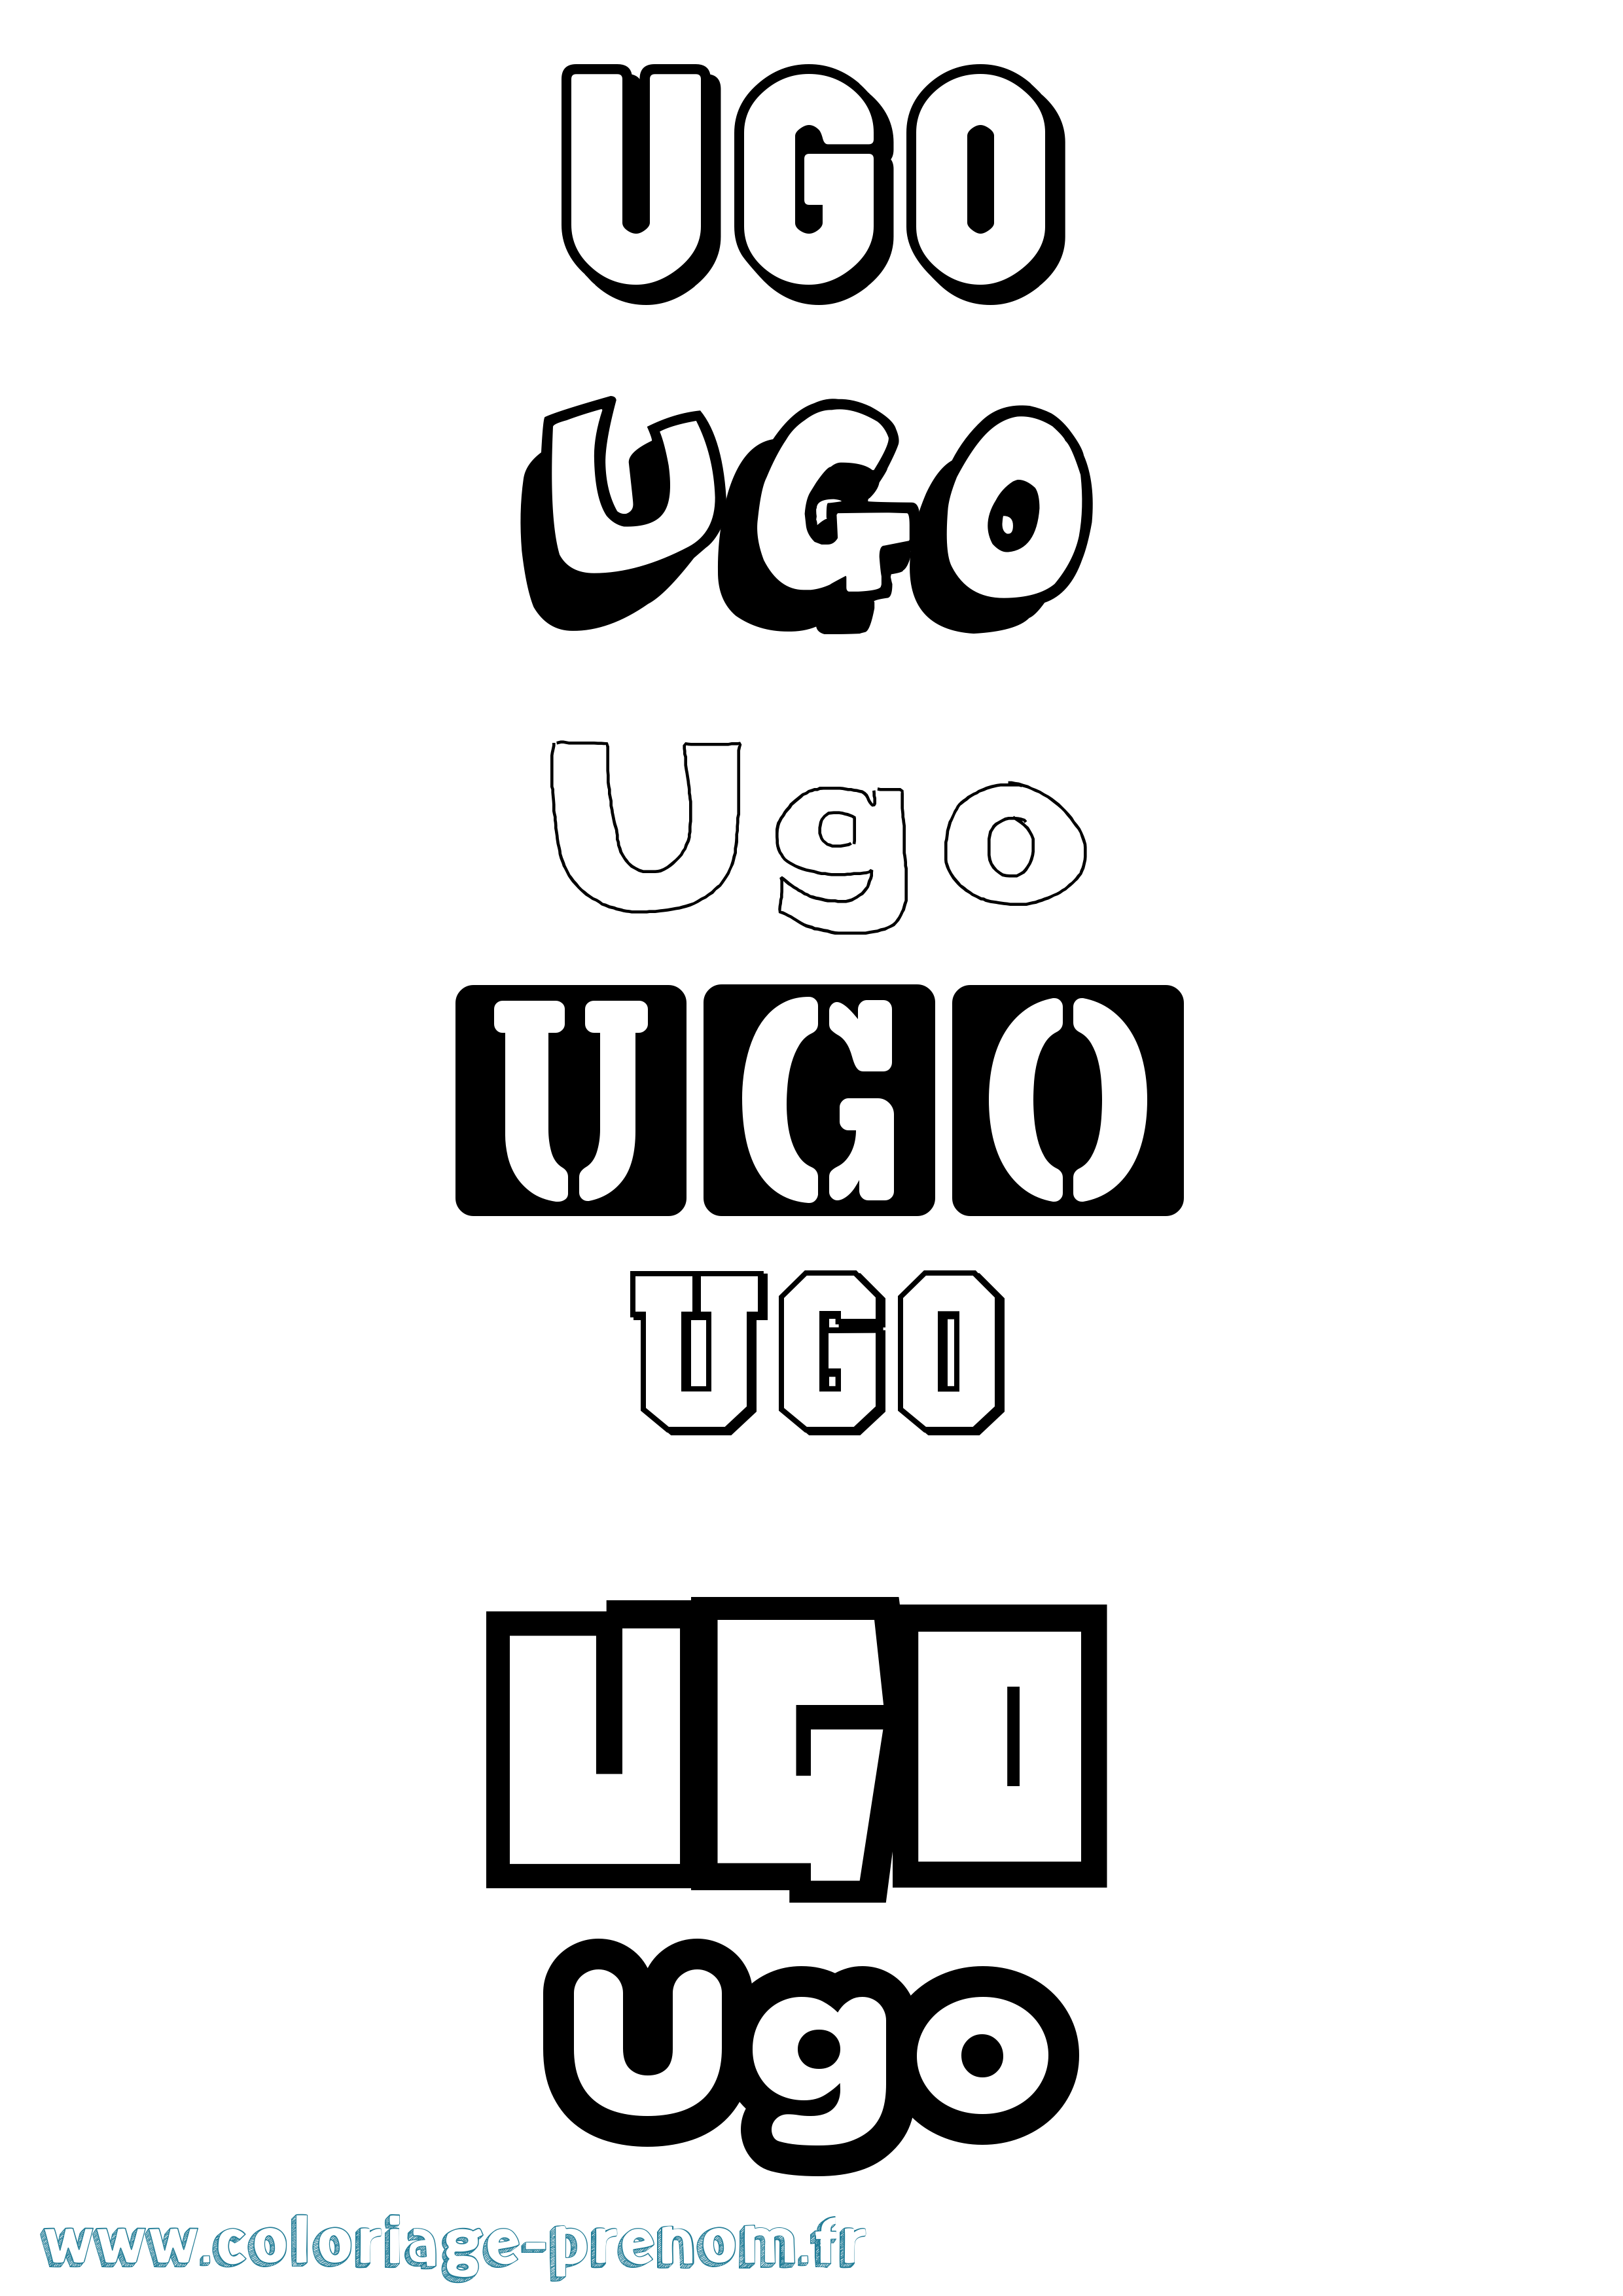 Coloriage prénom Ugo